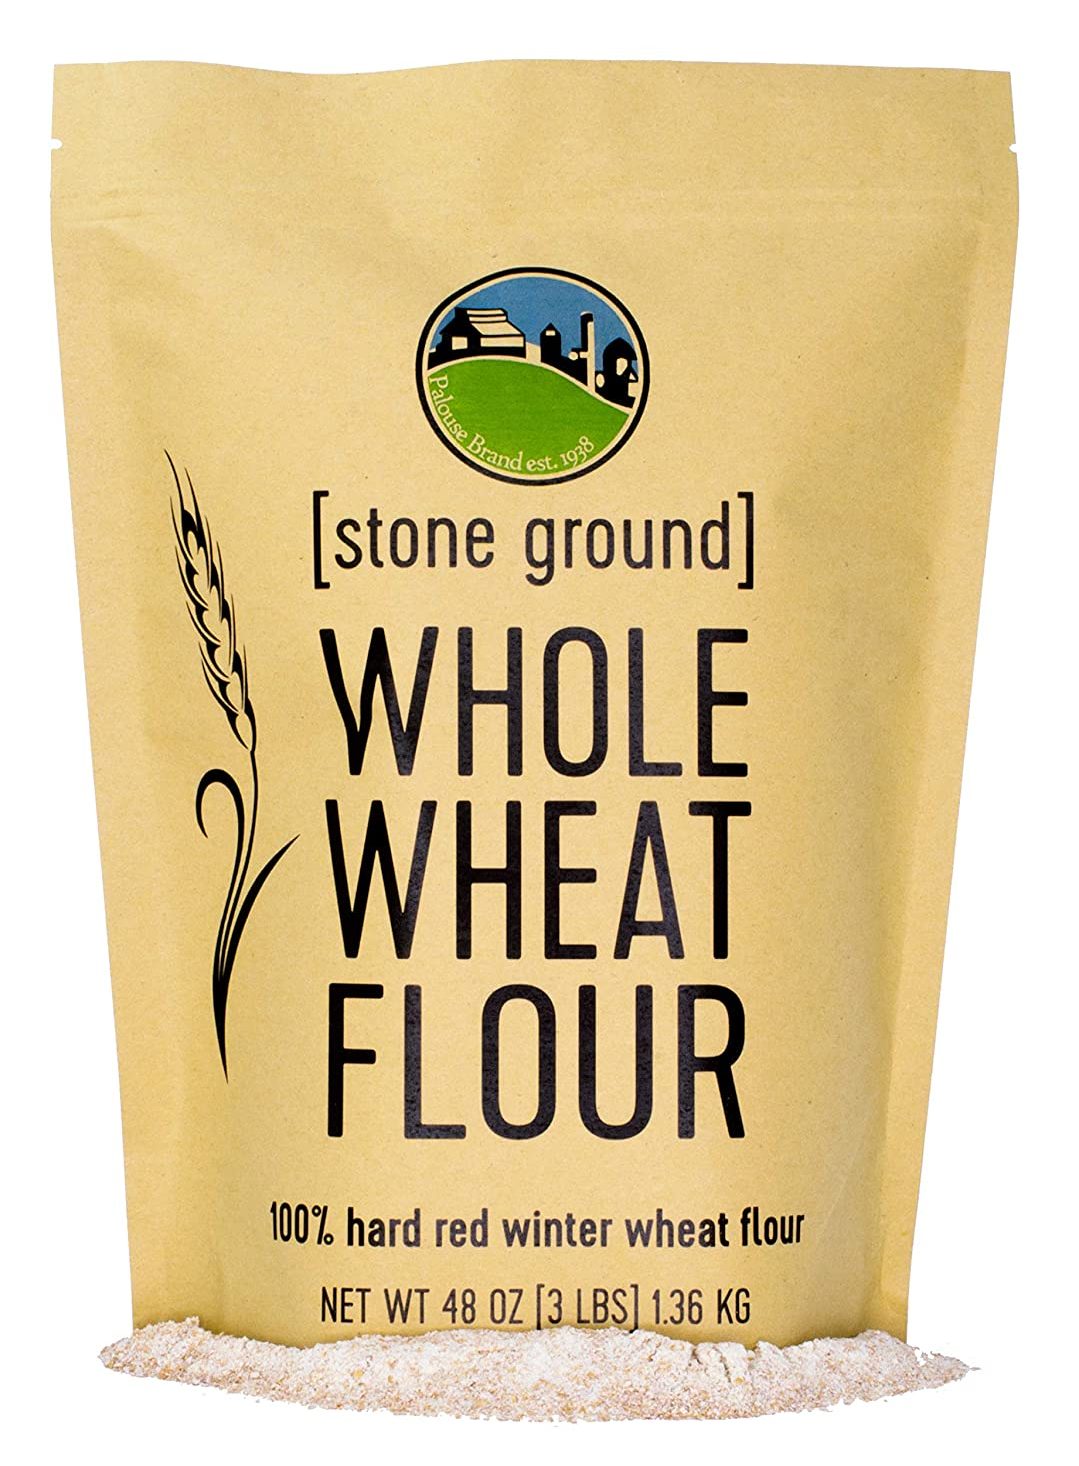 Otra alternativa saludable a la harina para todo uso es la harina de trigo integral.